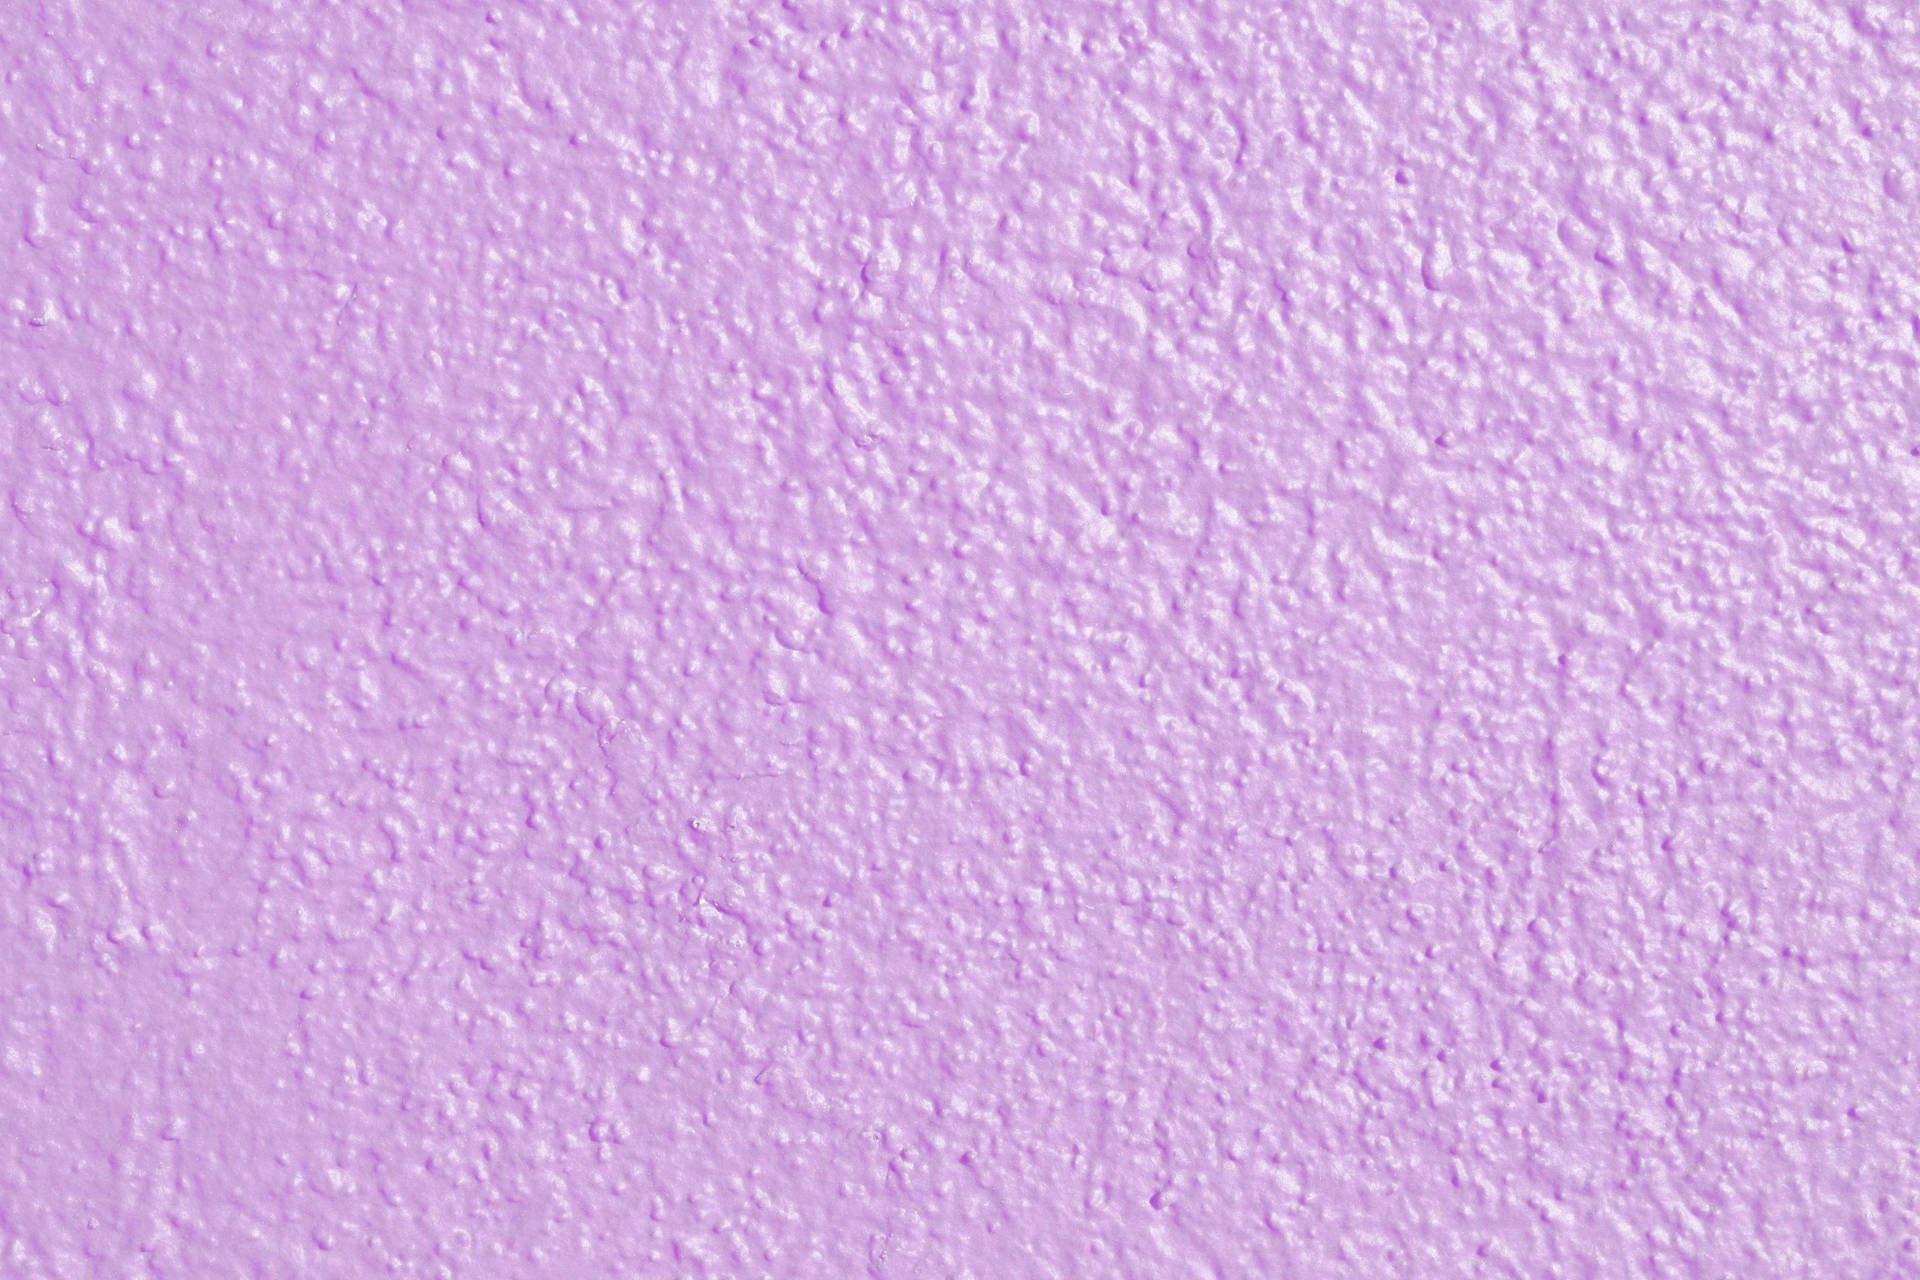 Lavender Color Pictures  Download Free Images on Unsplash